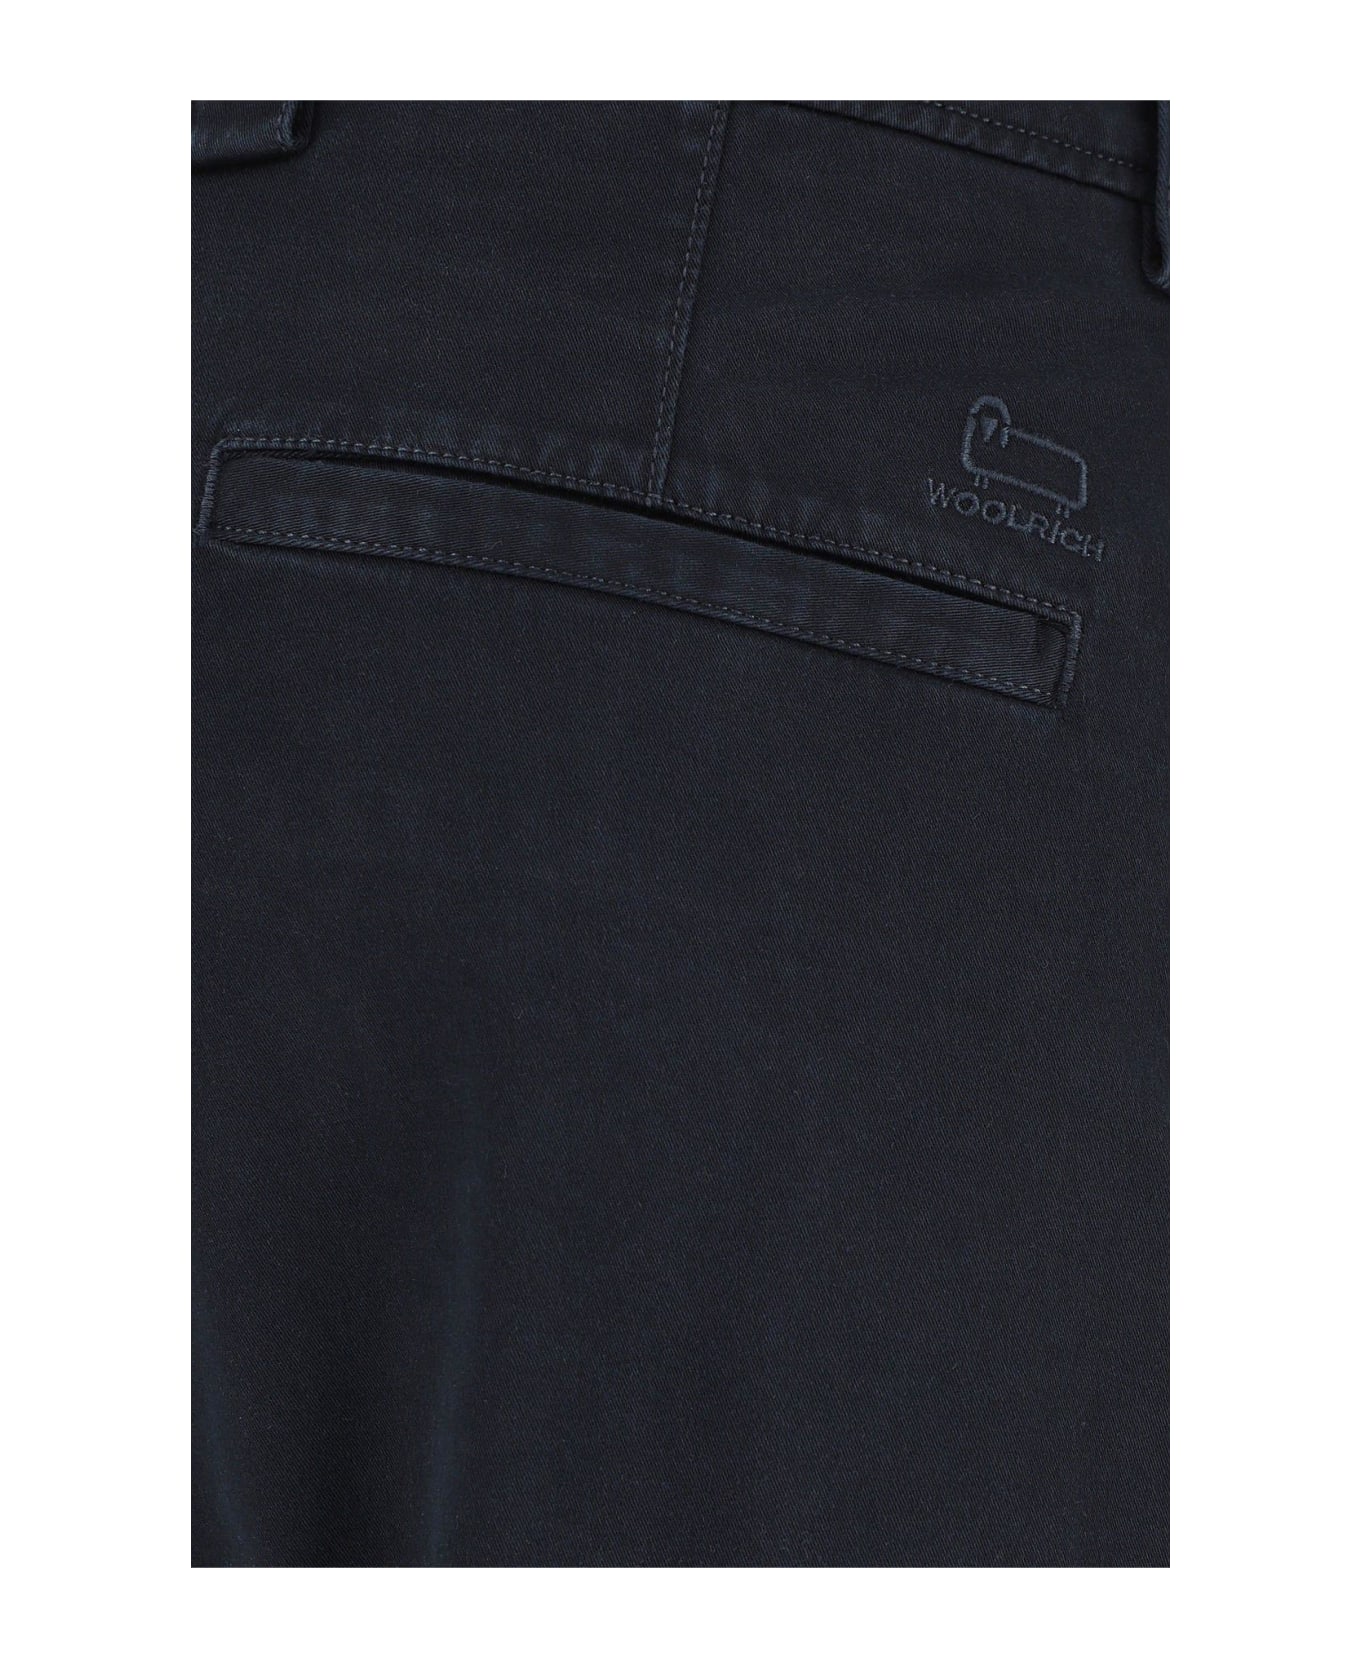 Woolrich Navy Blue Stretch Cotton Bermuda Shorts - NAVY